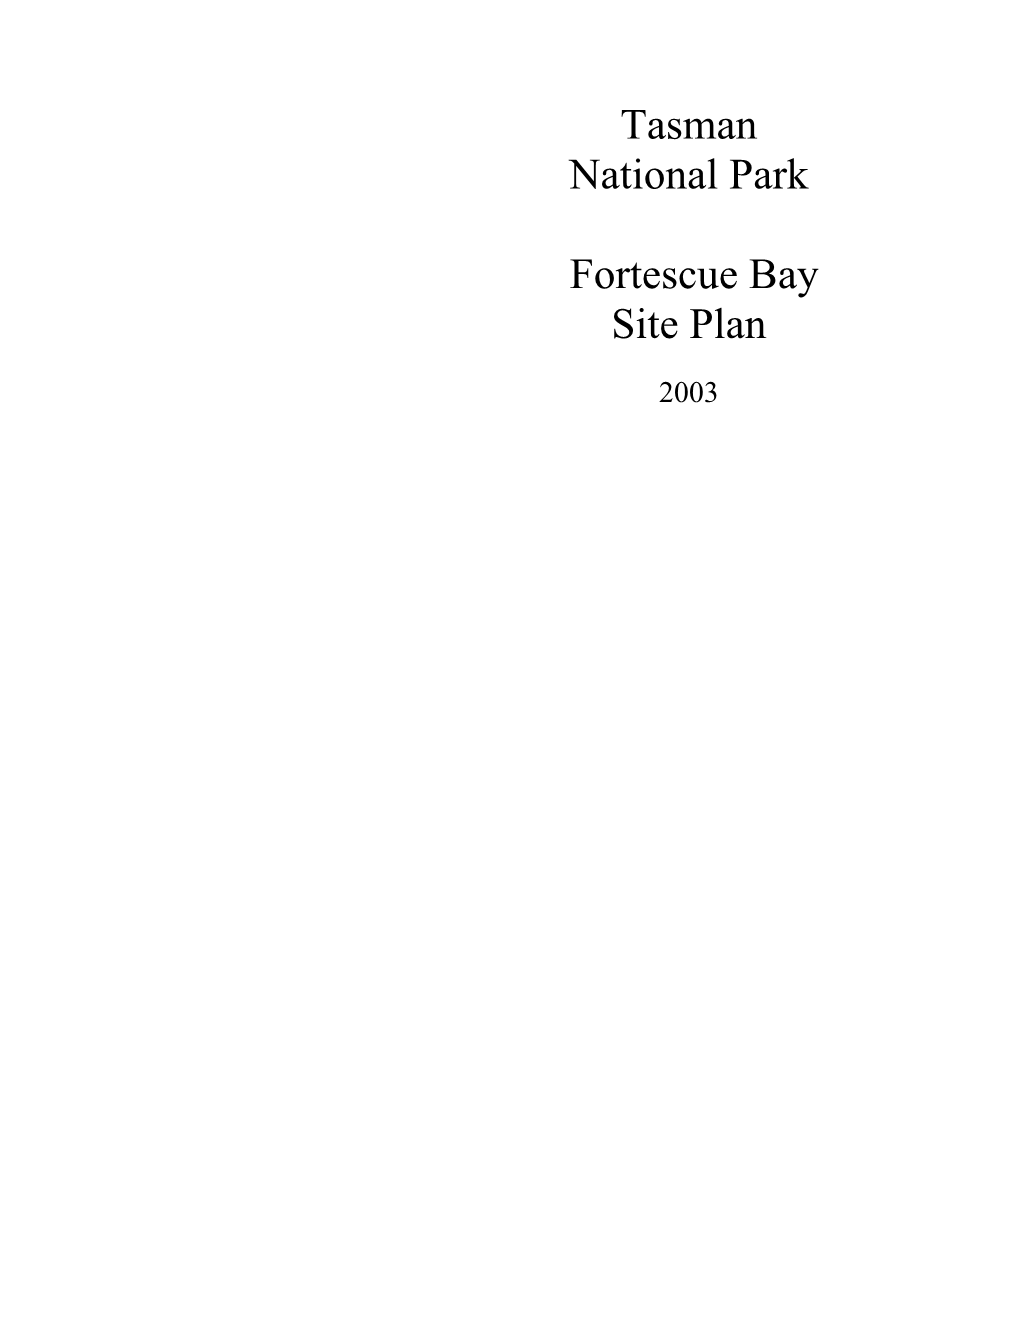 Tasman National Park Fortescue Bay Site Plan